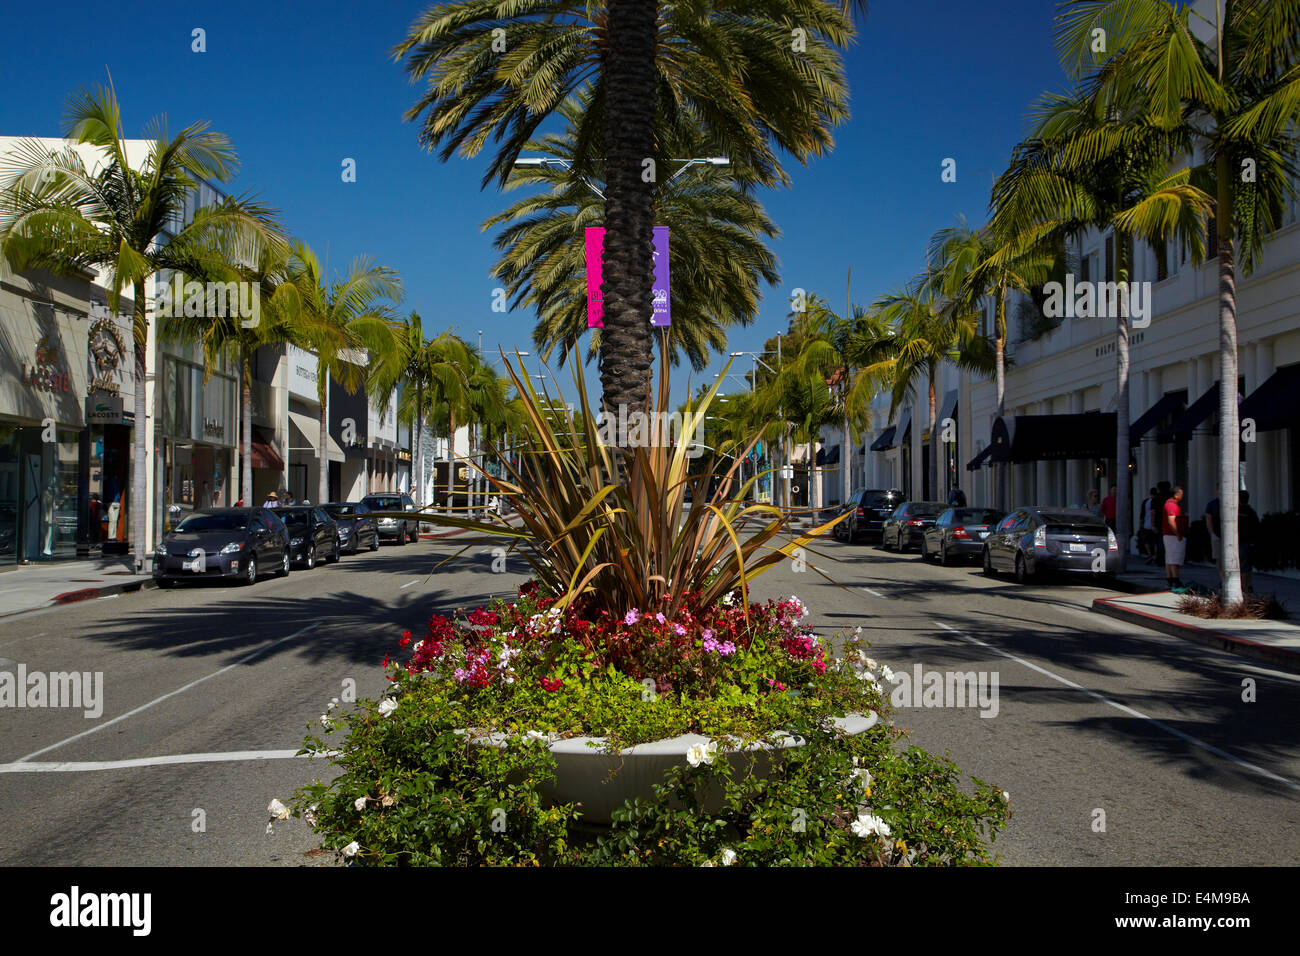 Palmiers sur Rodeo Drive, la rue commerçante de luxe à Beverly Hills, Los Angeles, Californie, USA Banque D'Images